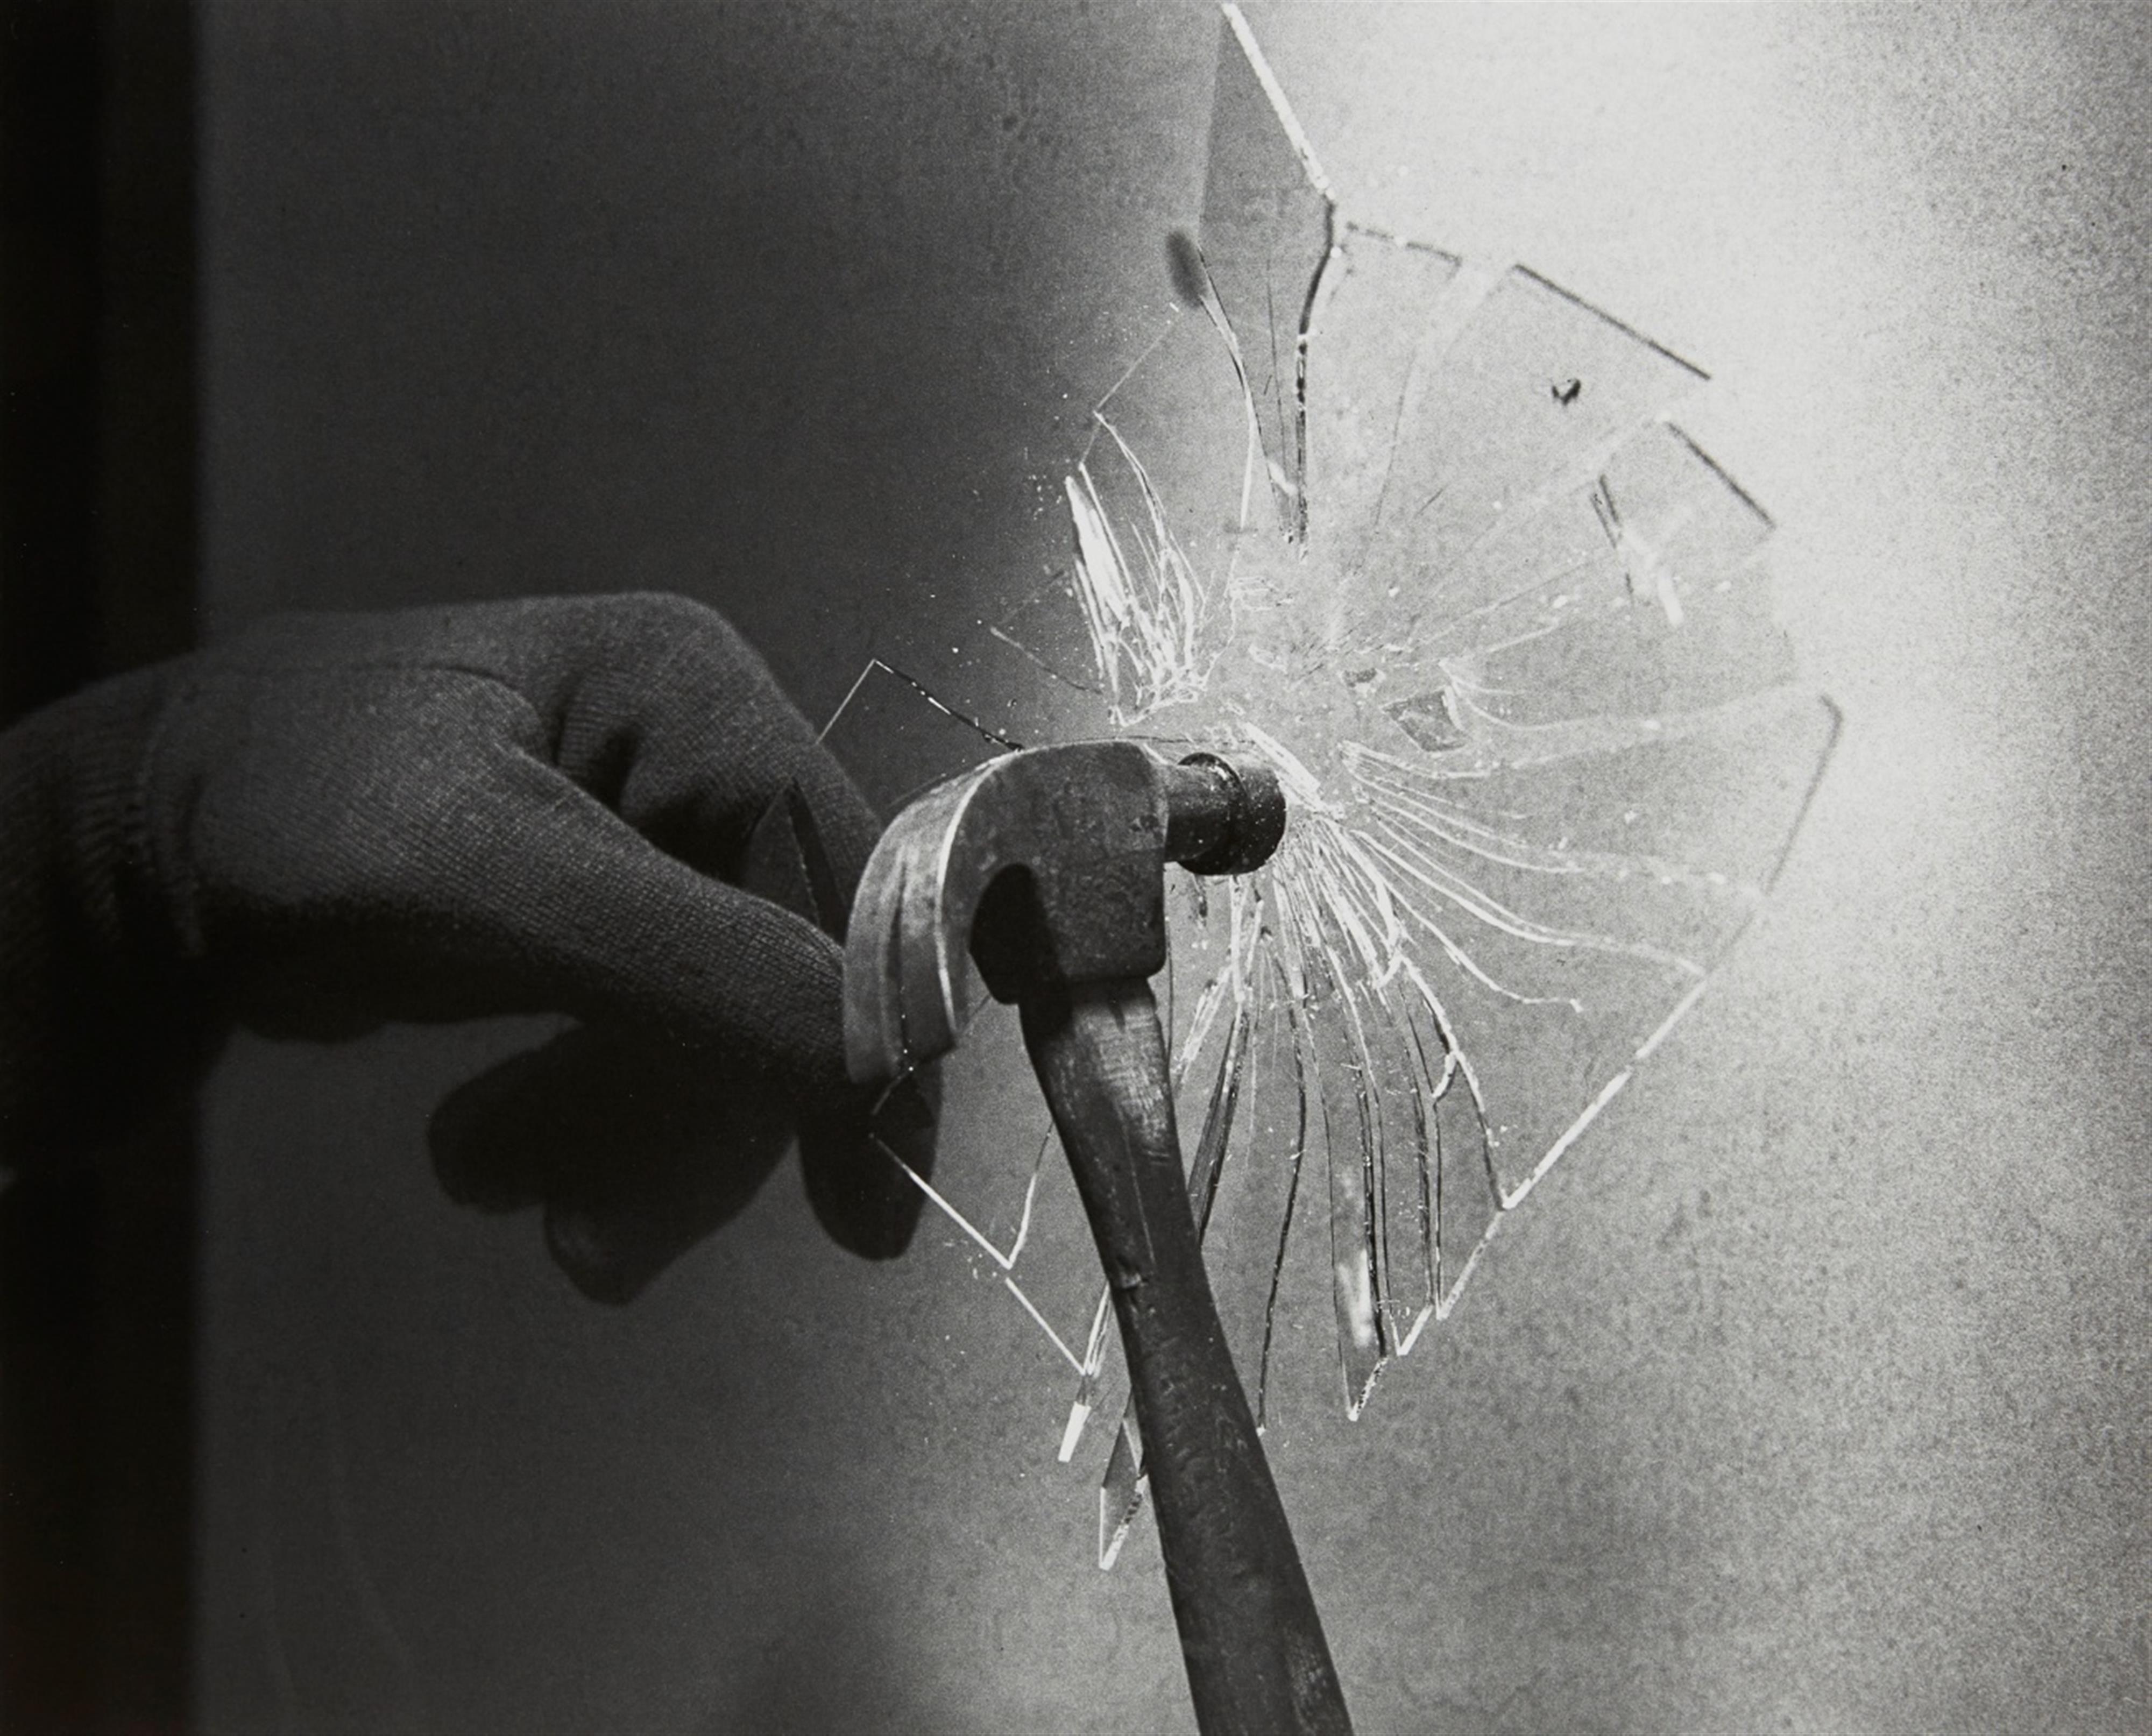 Harold Edgerton - Ein Hammer zerbricht eine Glasscheibe (Hammer breaks glass plate) - image-1